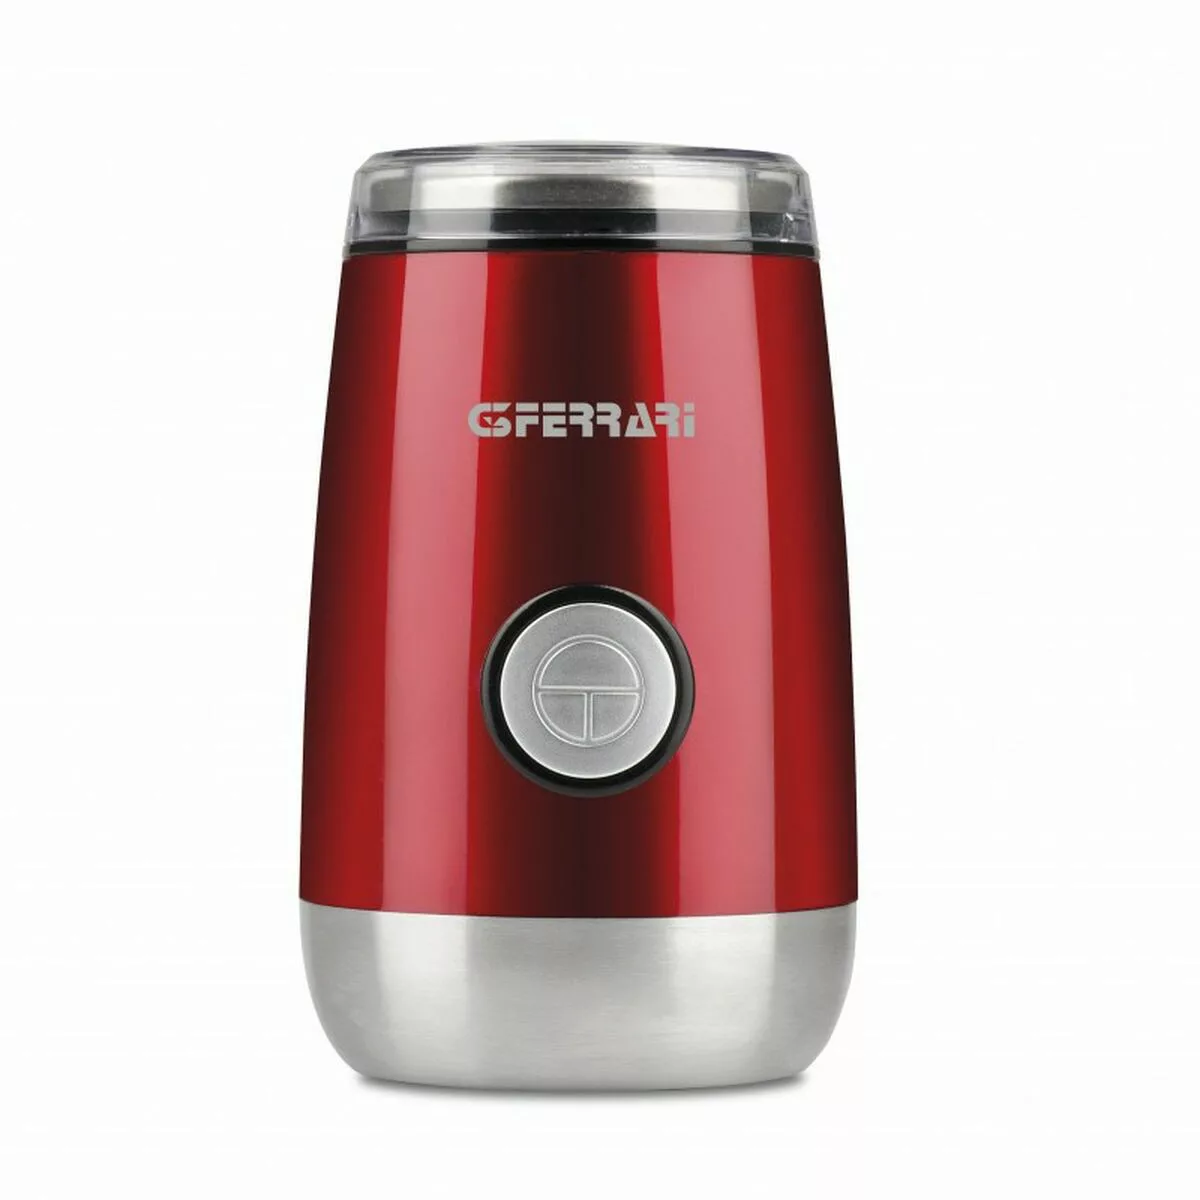 Elektromühle G3ferrari G20076 Rot 150 W günstig online kaufen